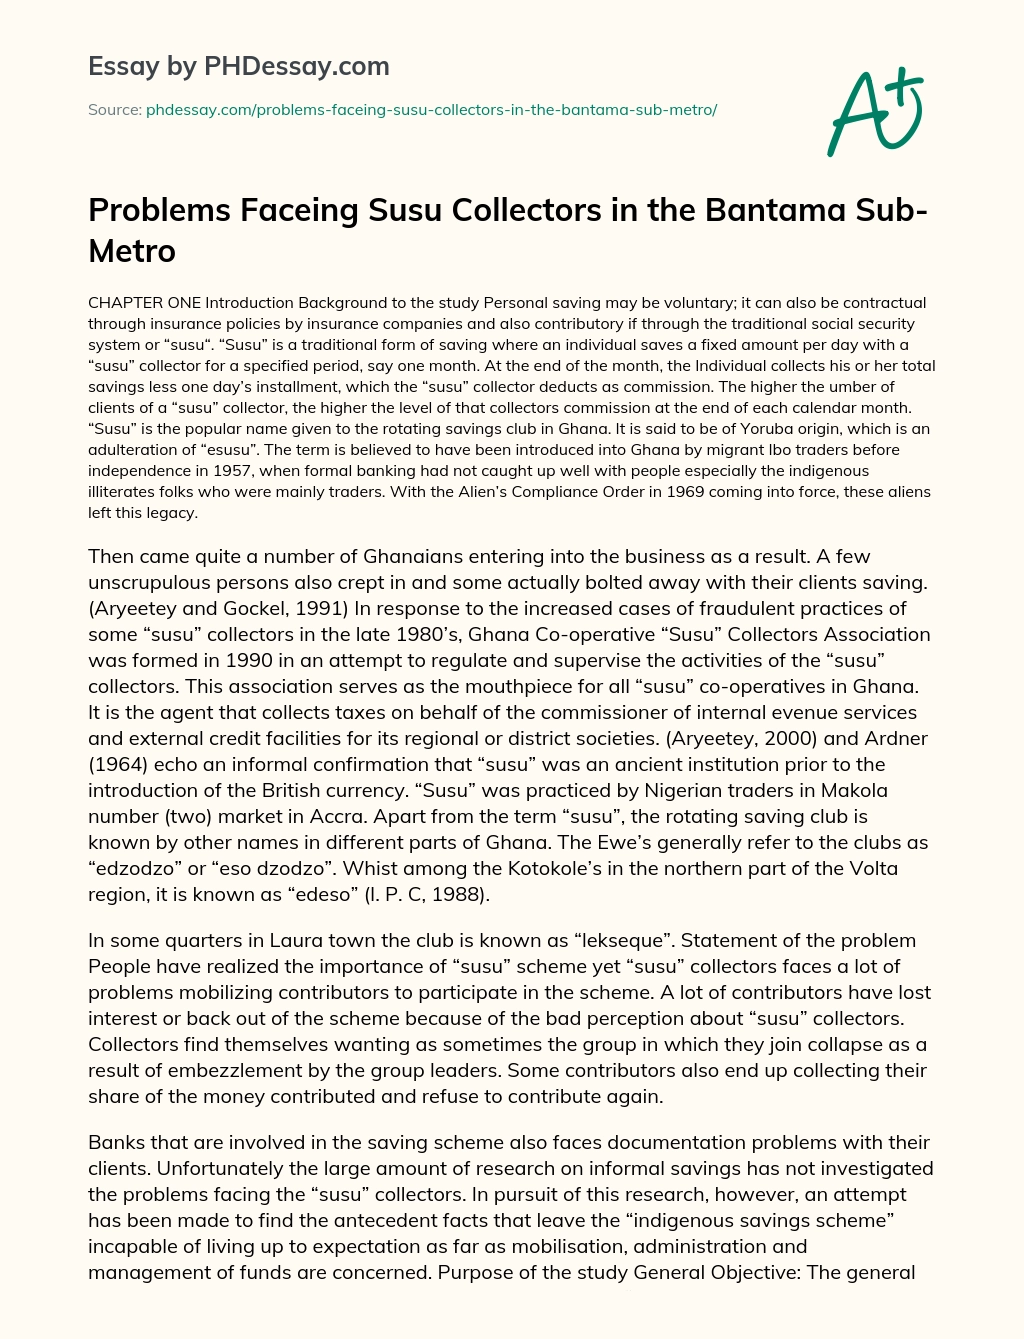 Problems Faceing Susu Collectors in the Bantama Sub-Metro essay